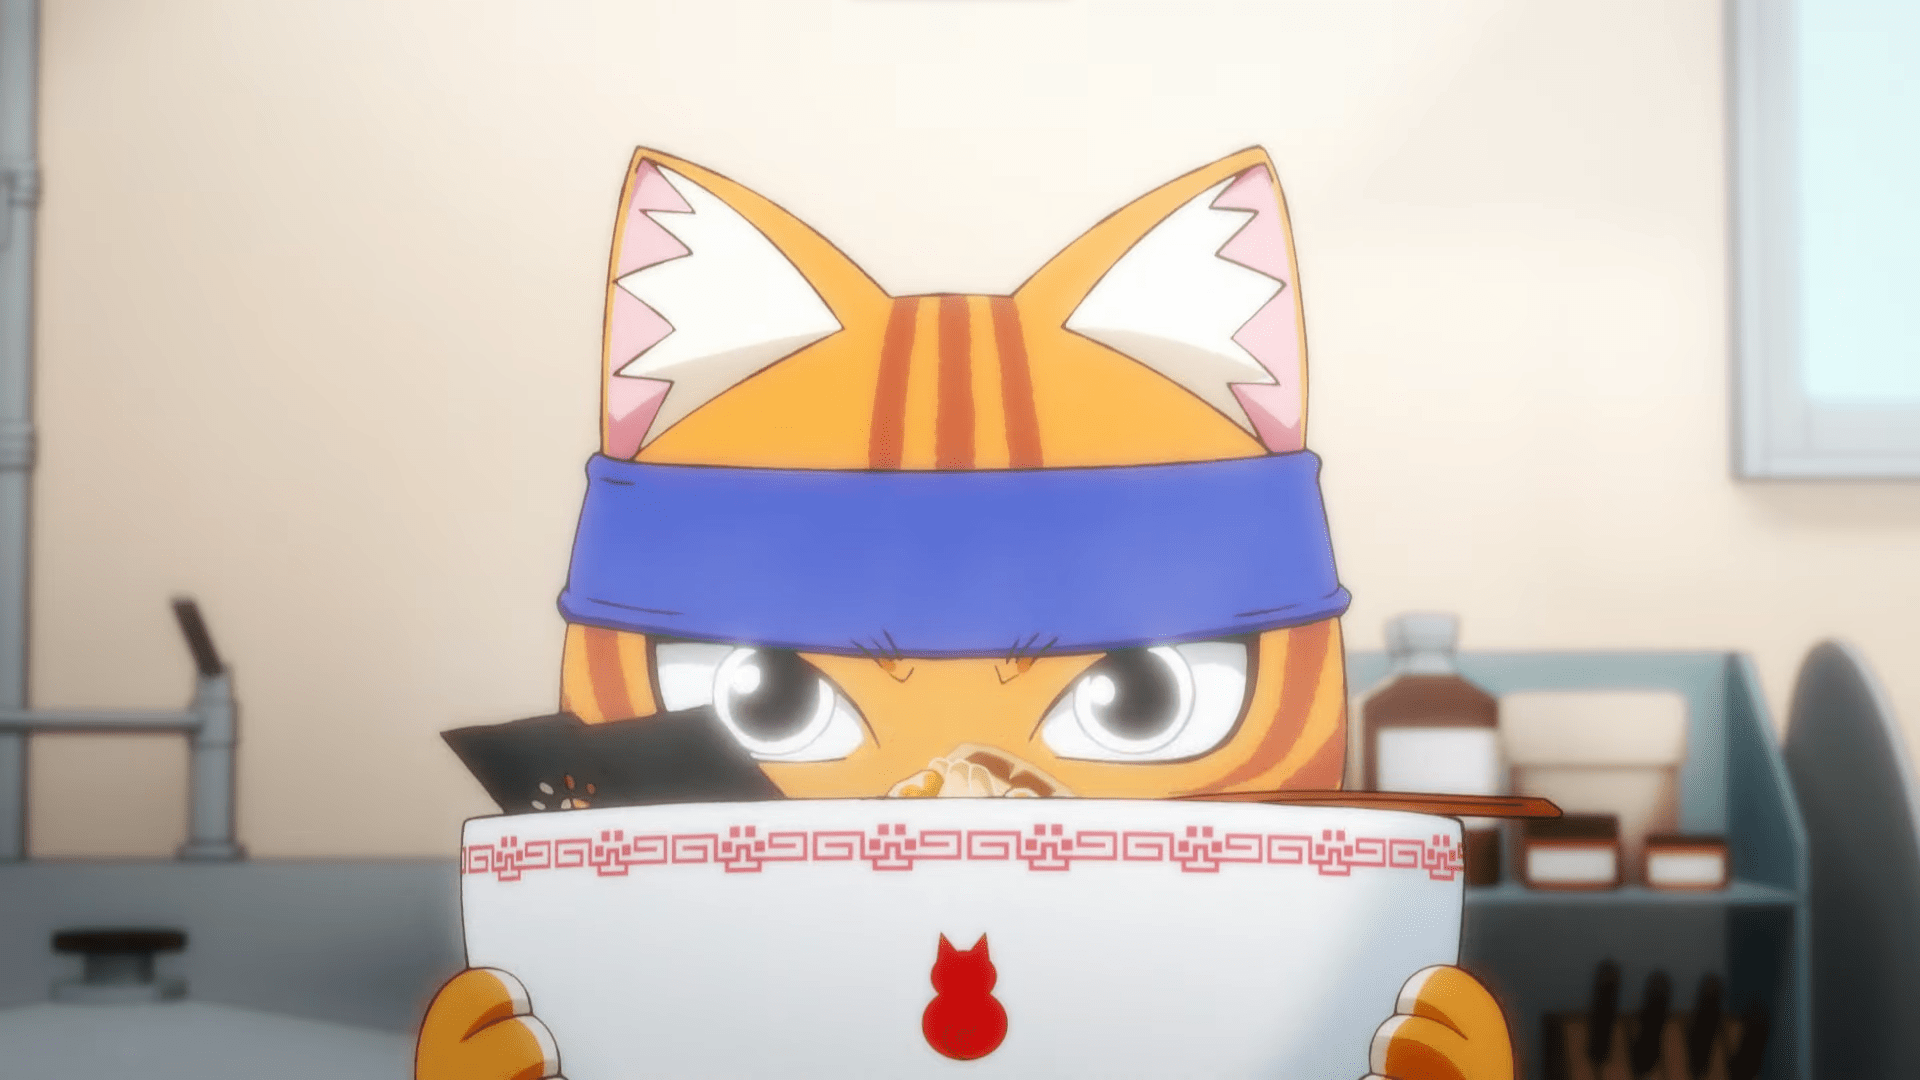 Red cat ramen ramen aka neko anime news otaku mantra